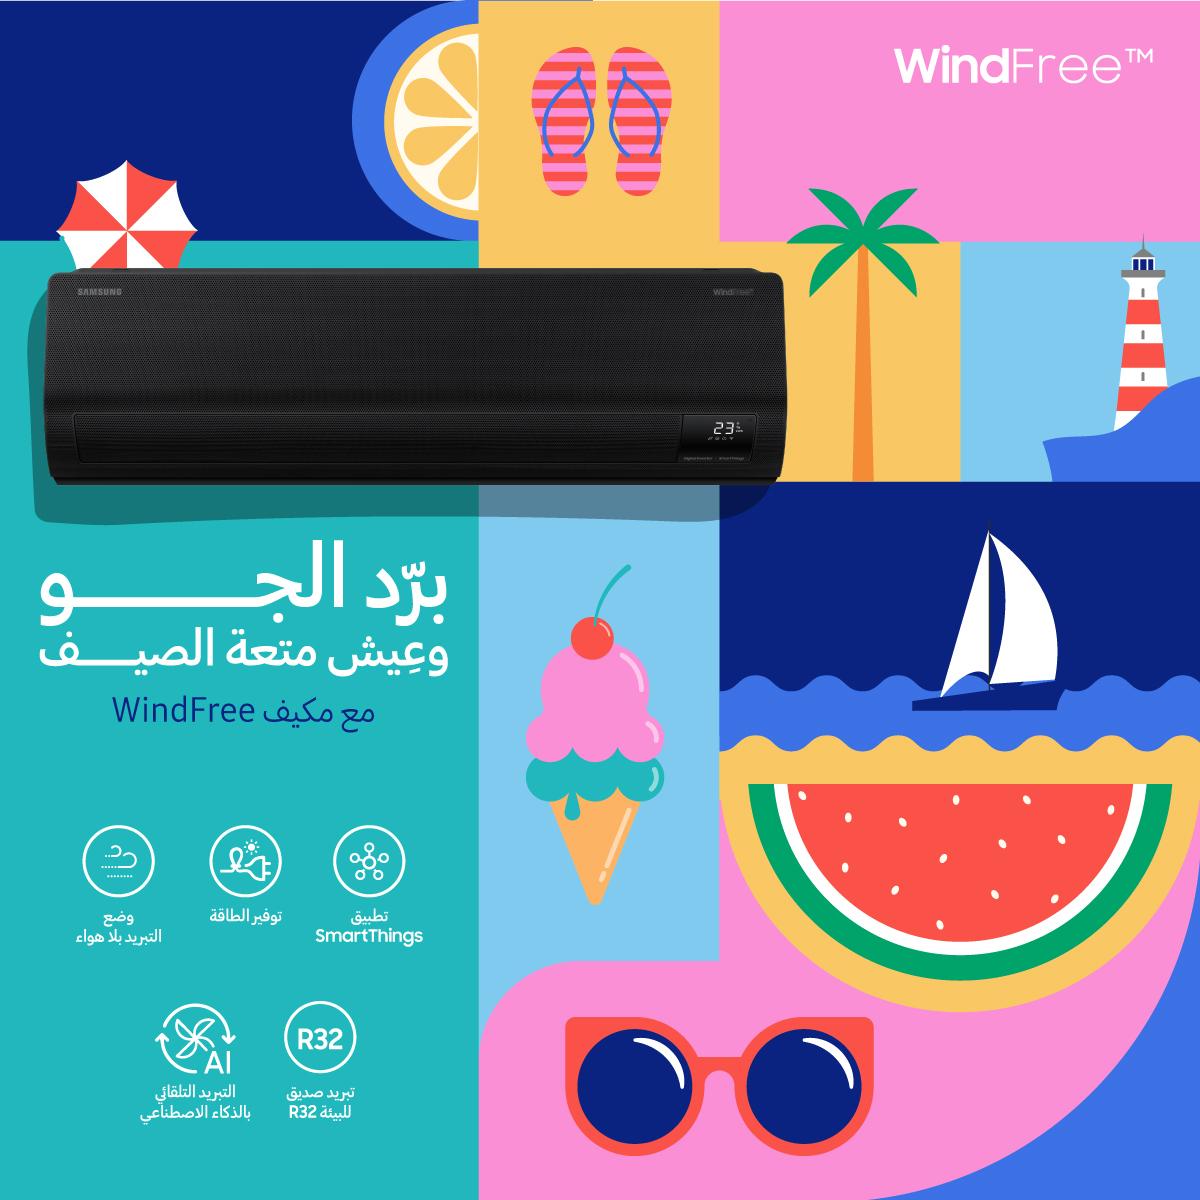 سامسونج إلكترونيكس المشرق العربي توفر مكيفات الهواء إنفيرتر WindFree من تشكيلة 2024 في السوق الأردنية لتبريد منعش وتوفير كبير في استهلاك الطاقة